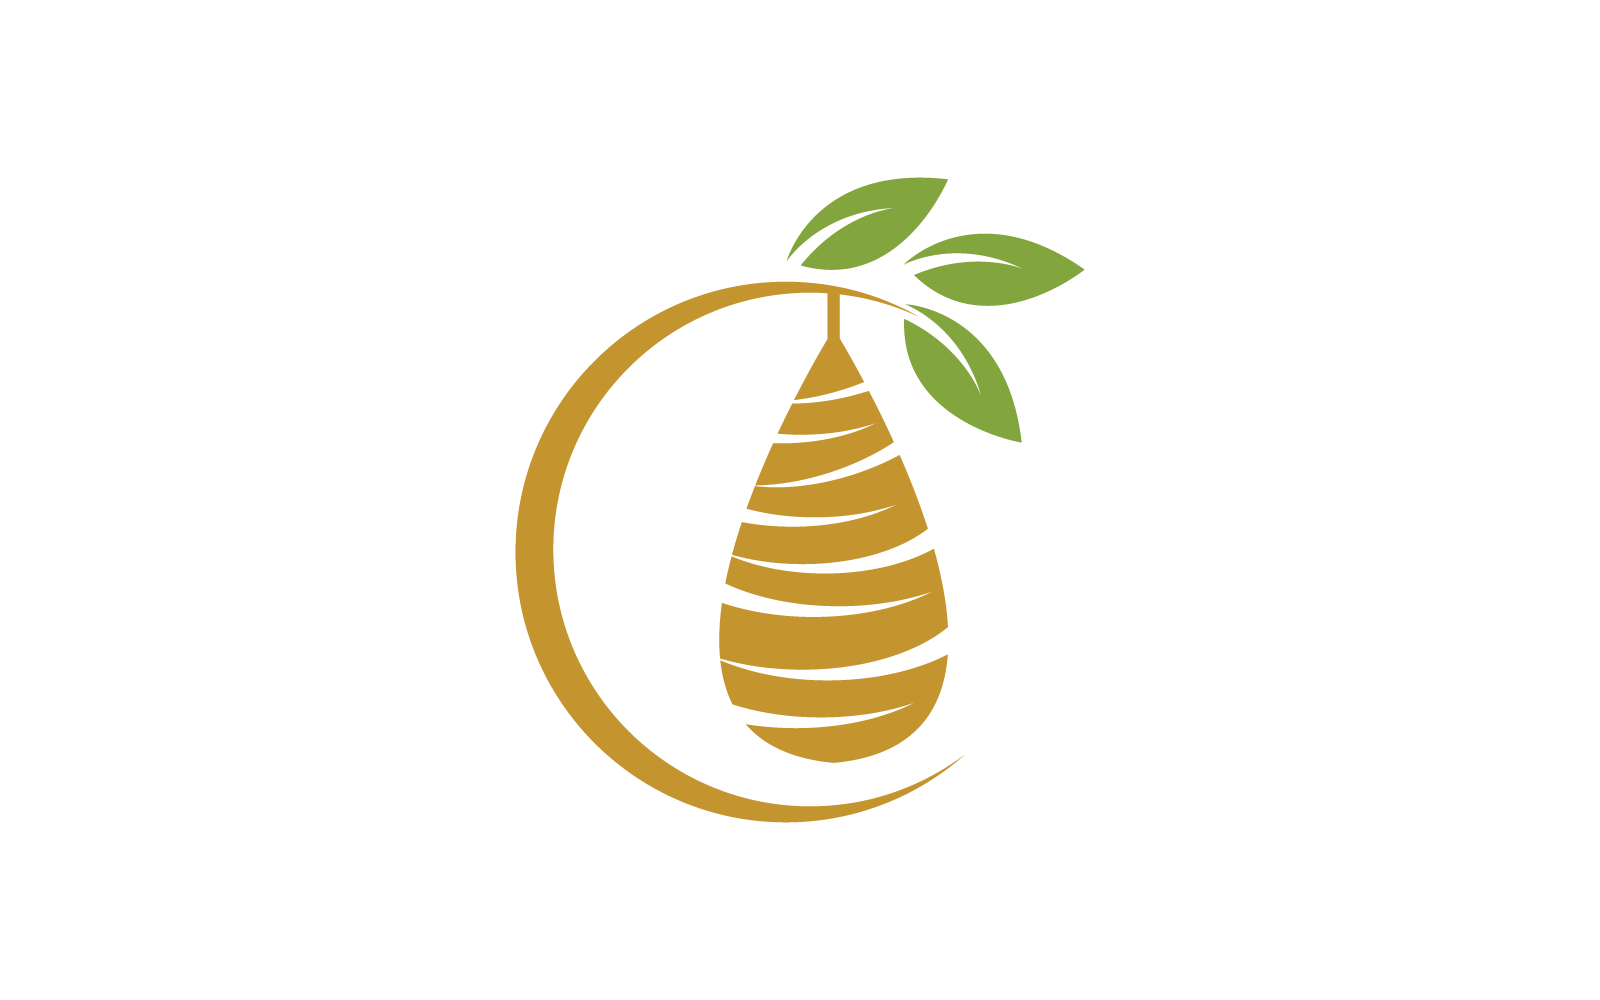 Cocoon logo vector design